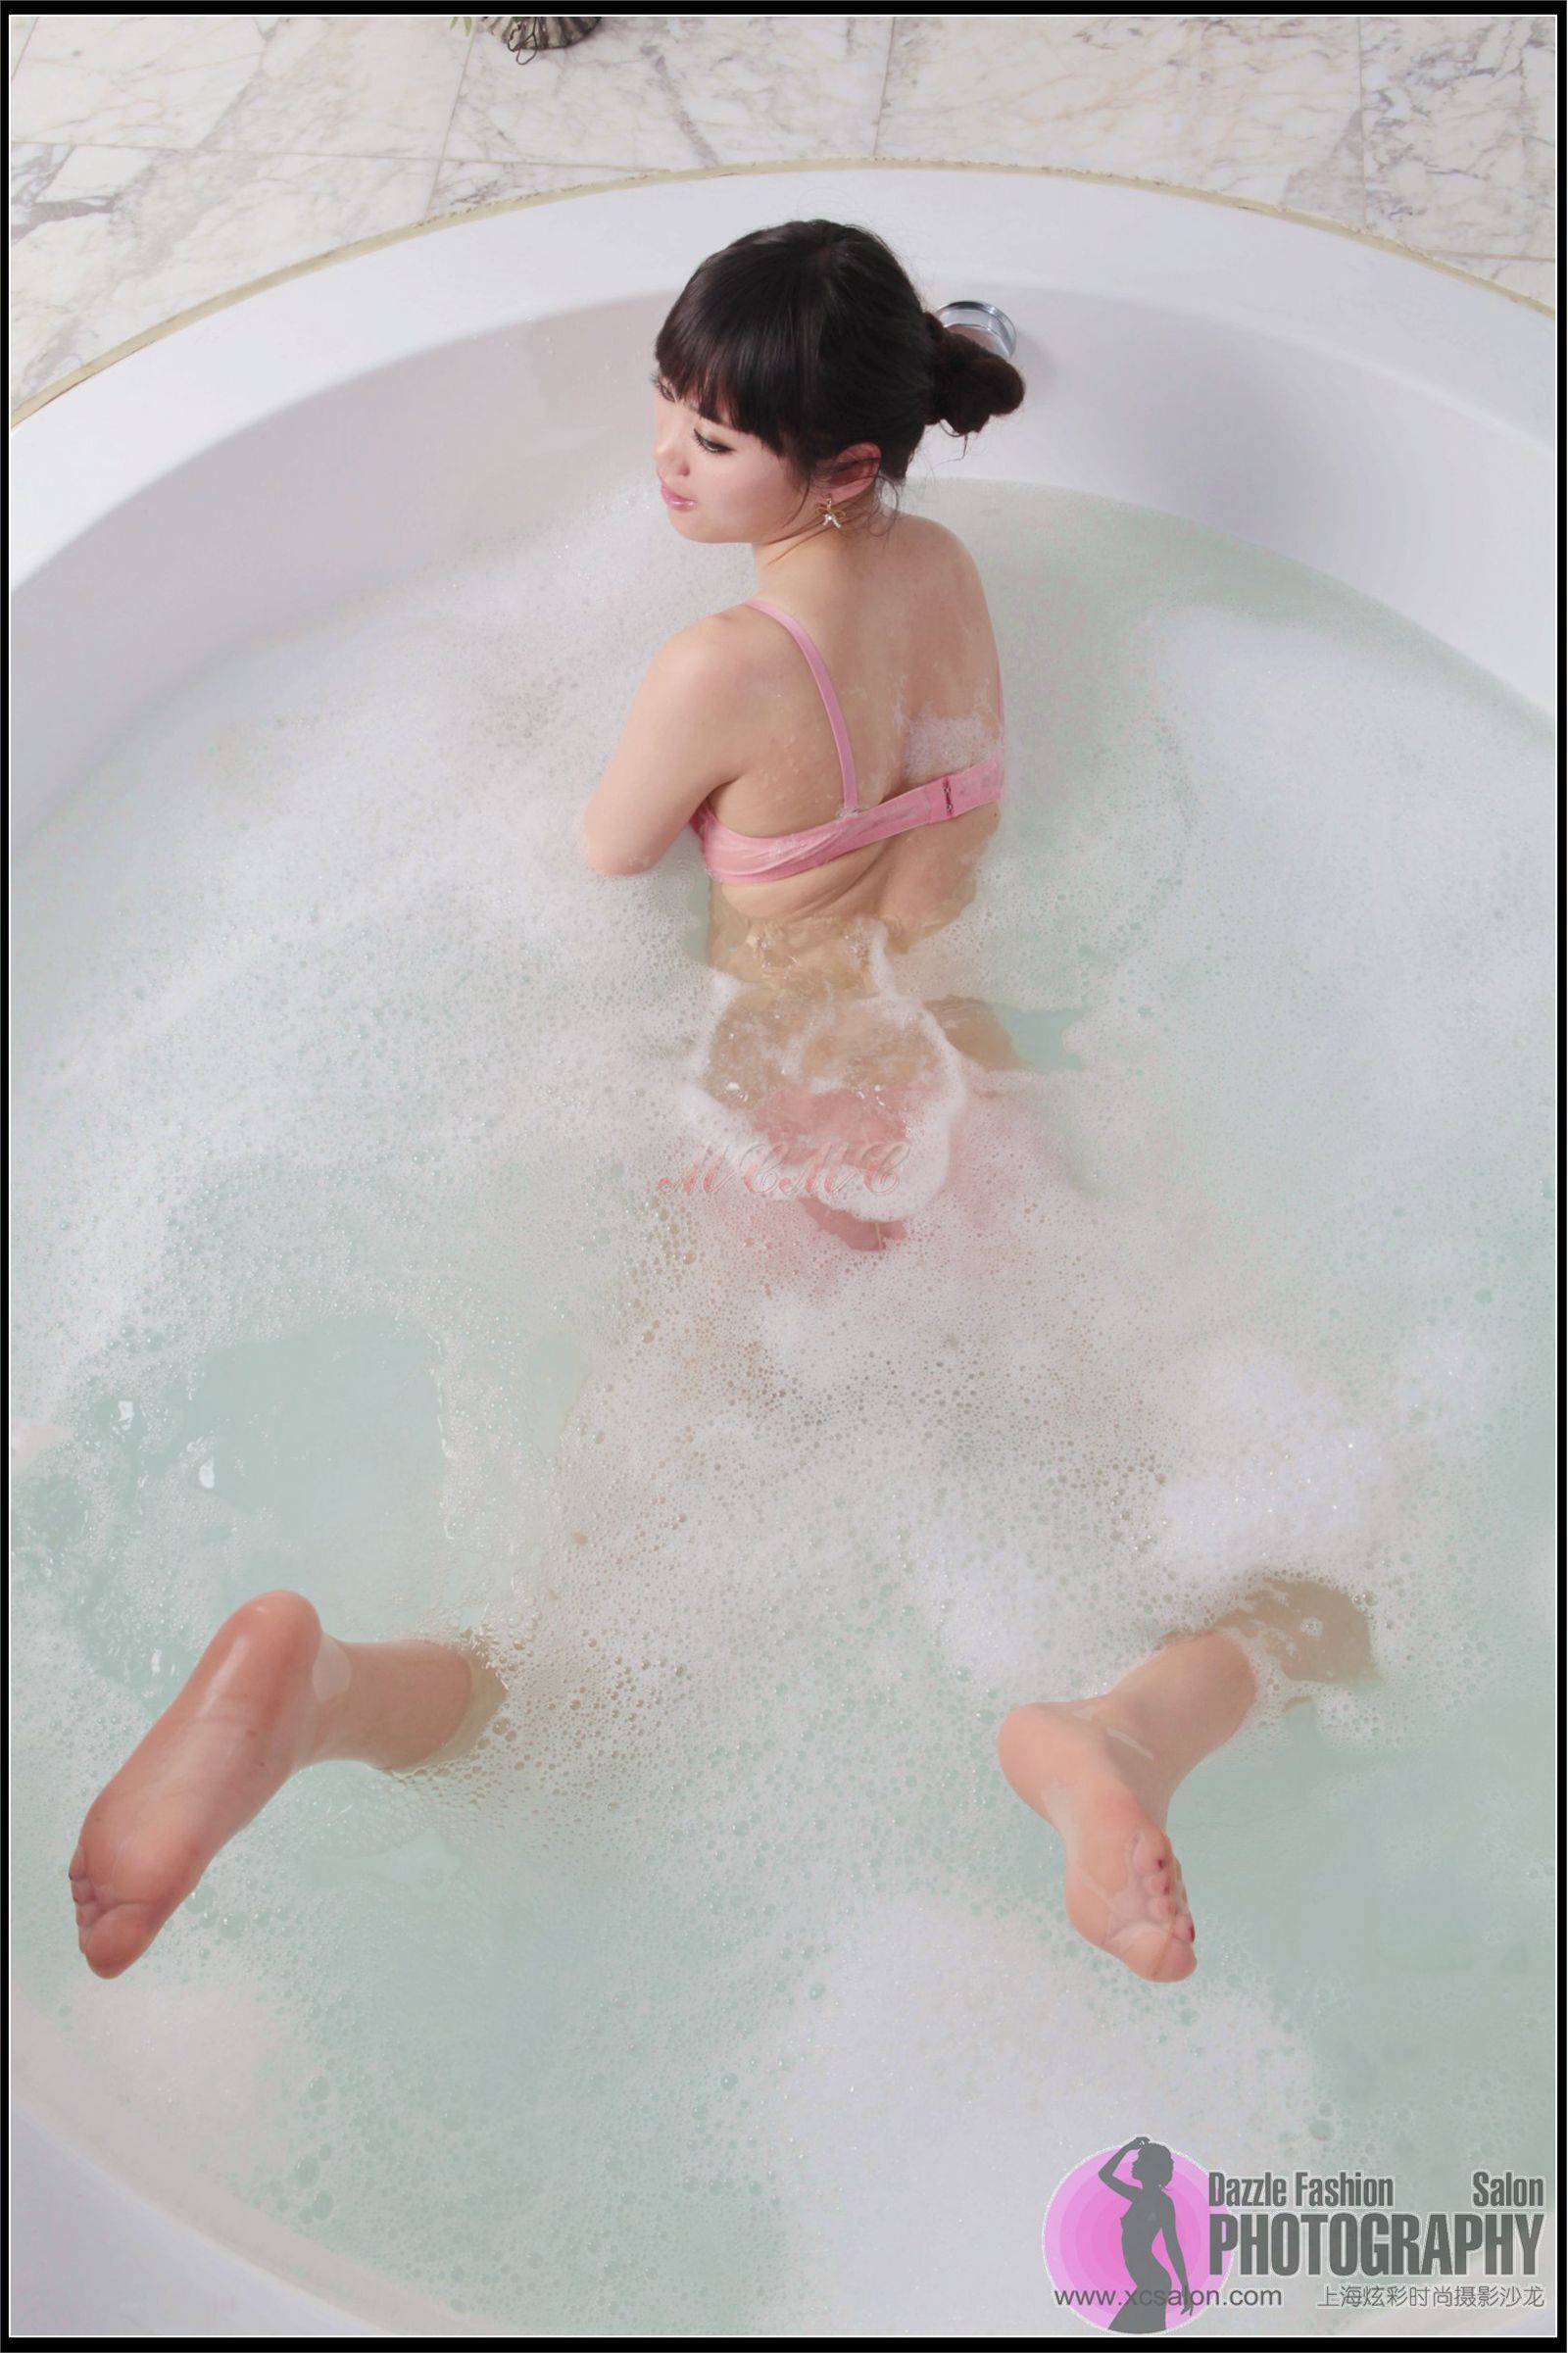 浴缸中美体诱惑 上海煊彩时尚摄影